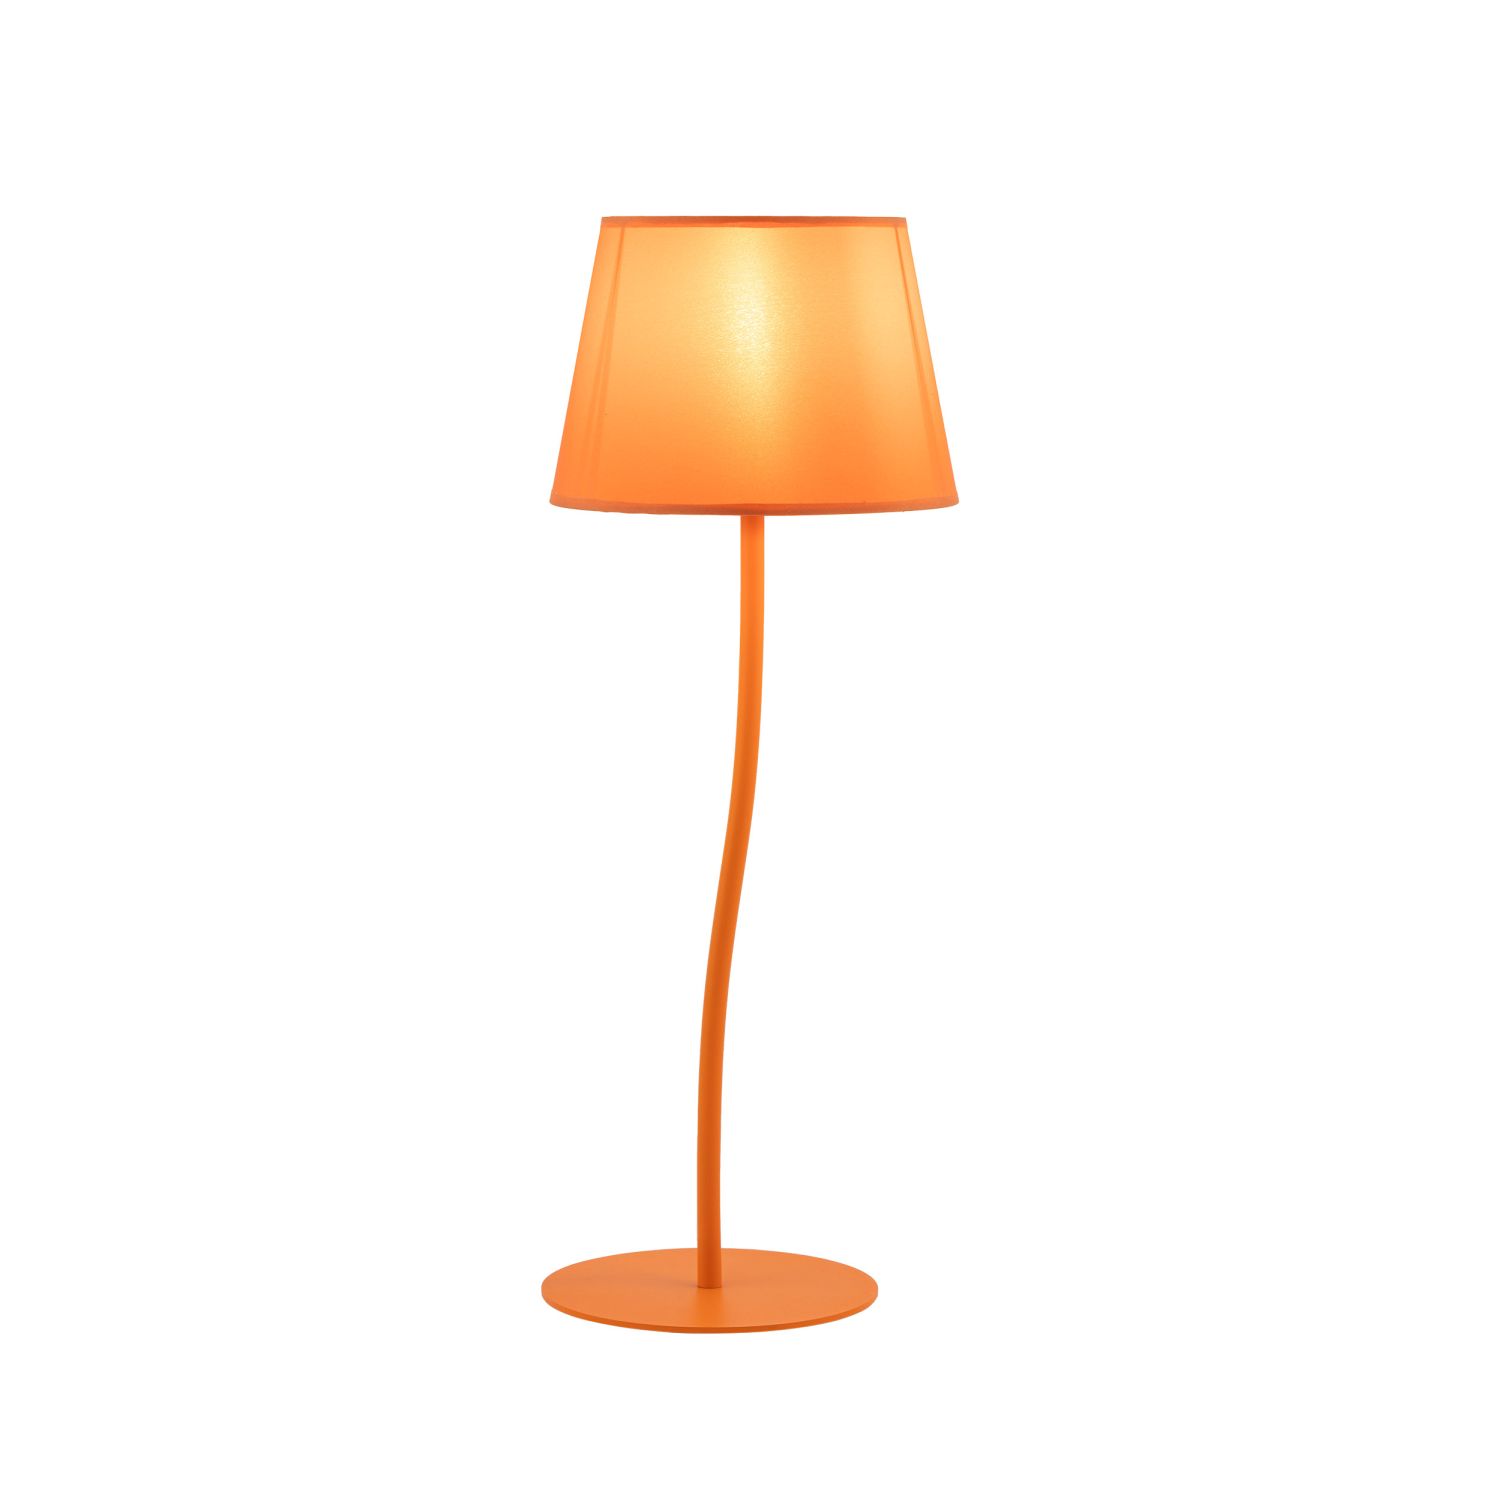 Kinderzimmerlampe Tisch Orange H: 37cm klein E27 Metall Stoff